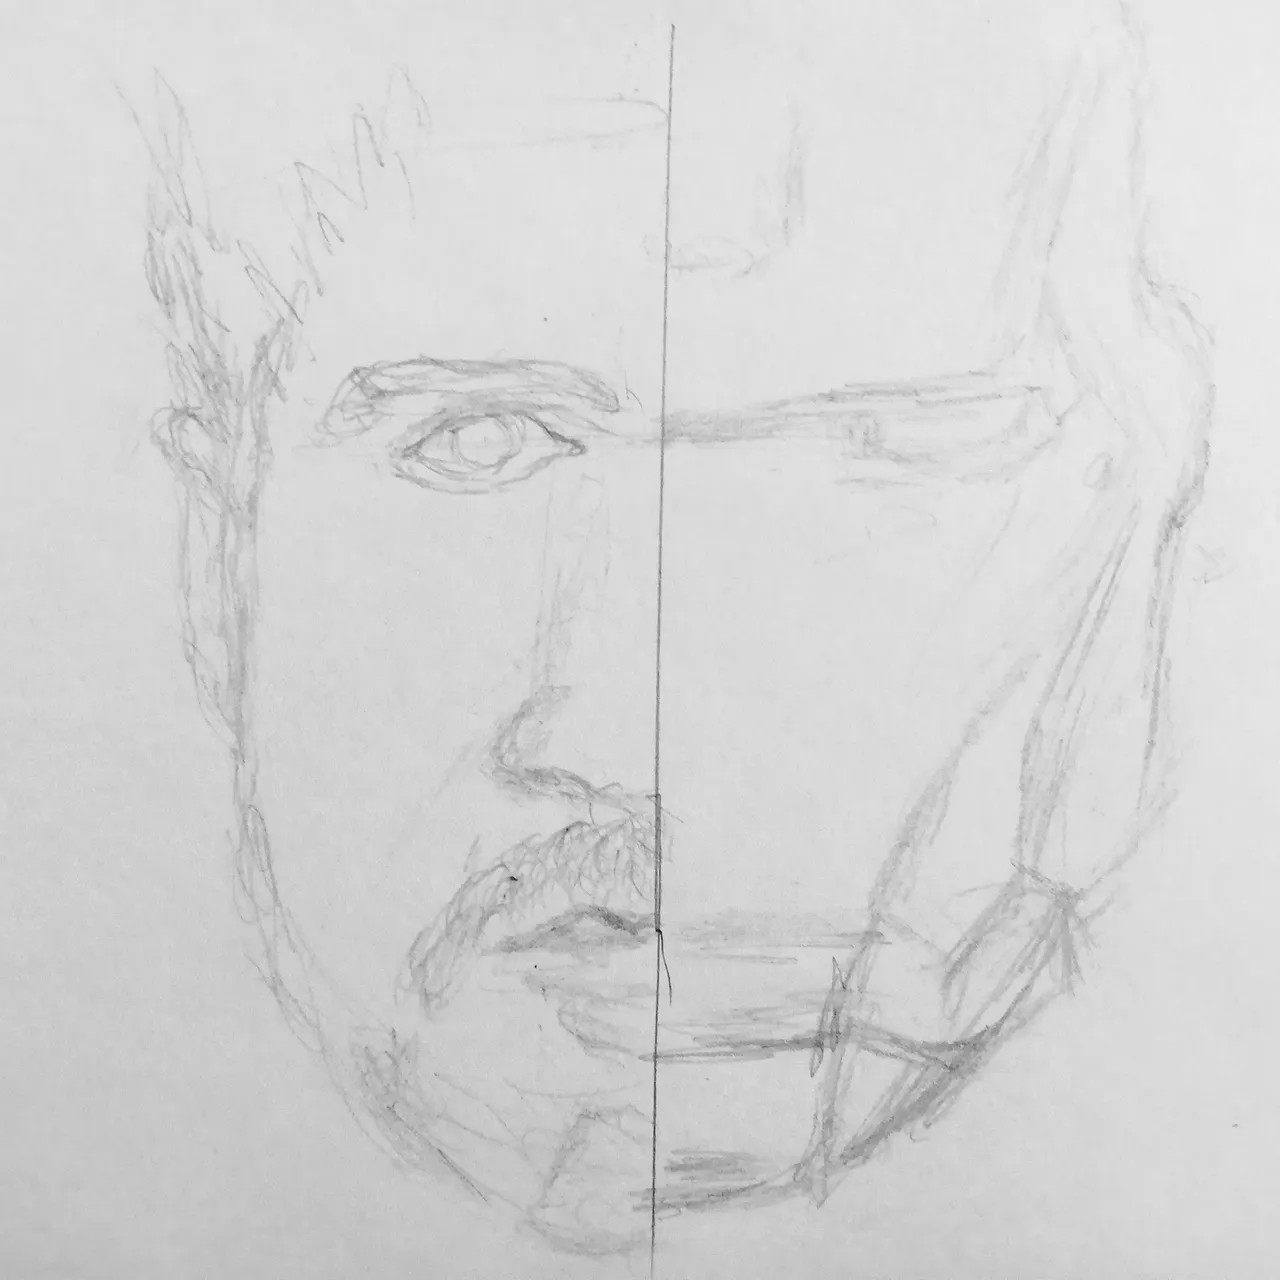 Iron Man Face Shot Pencil by whitekidz on DeviantArt